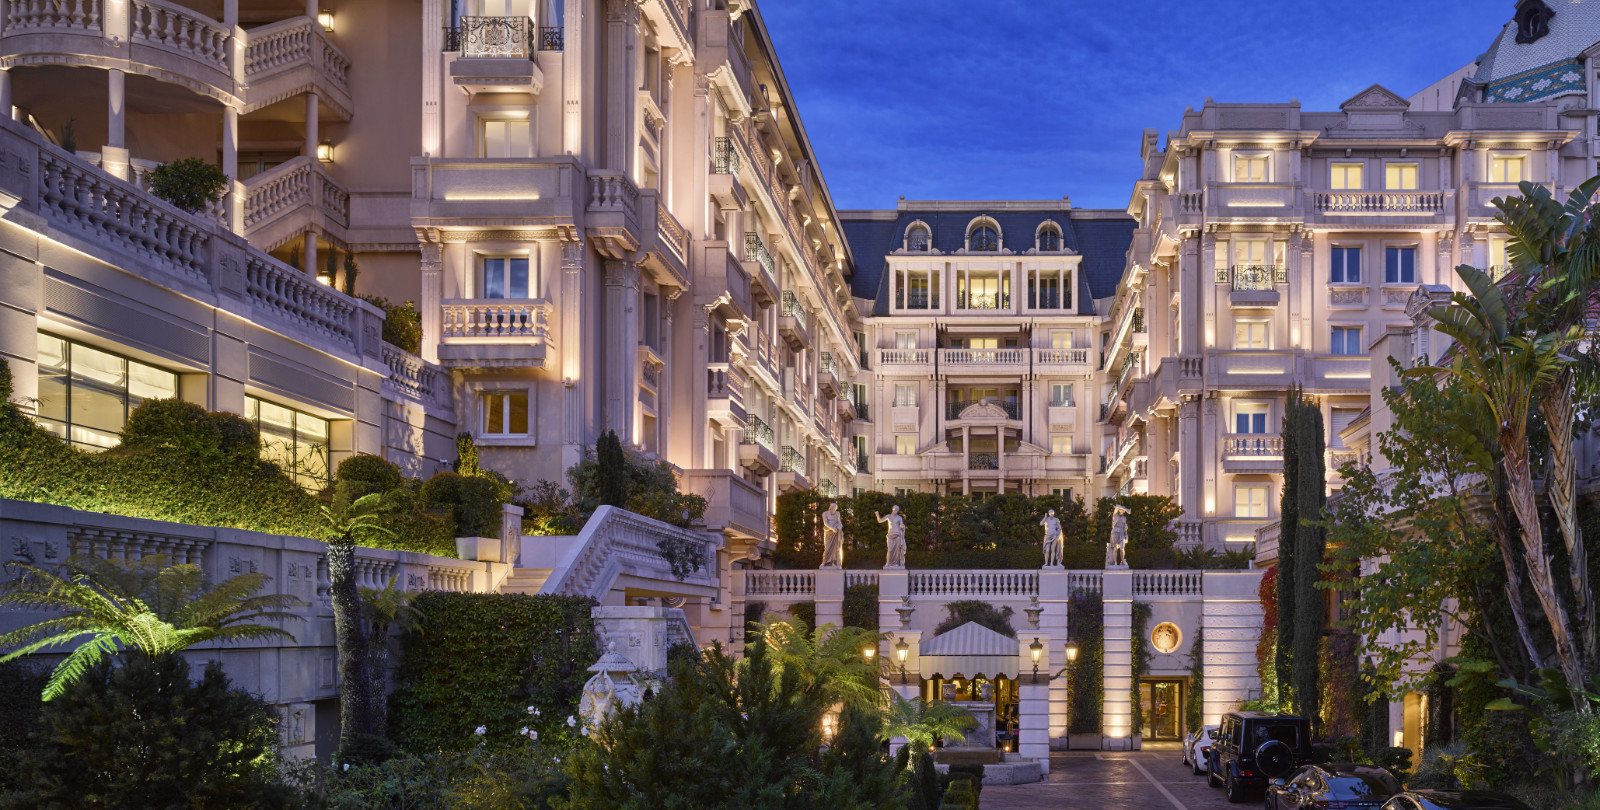 The Hotel Metropole Monte-Carlo - Luxferity Magazine